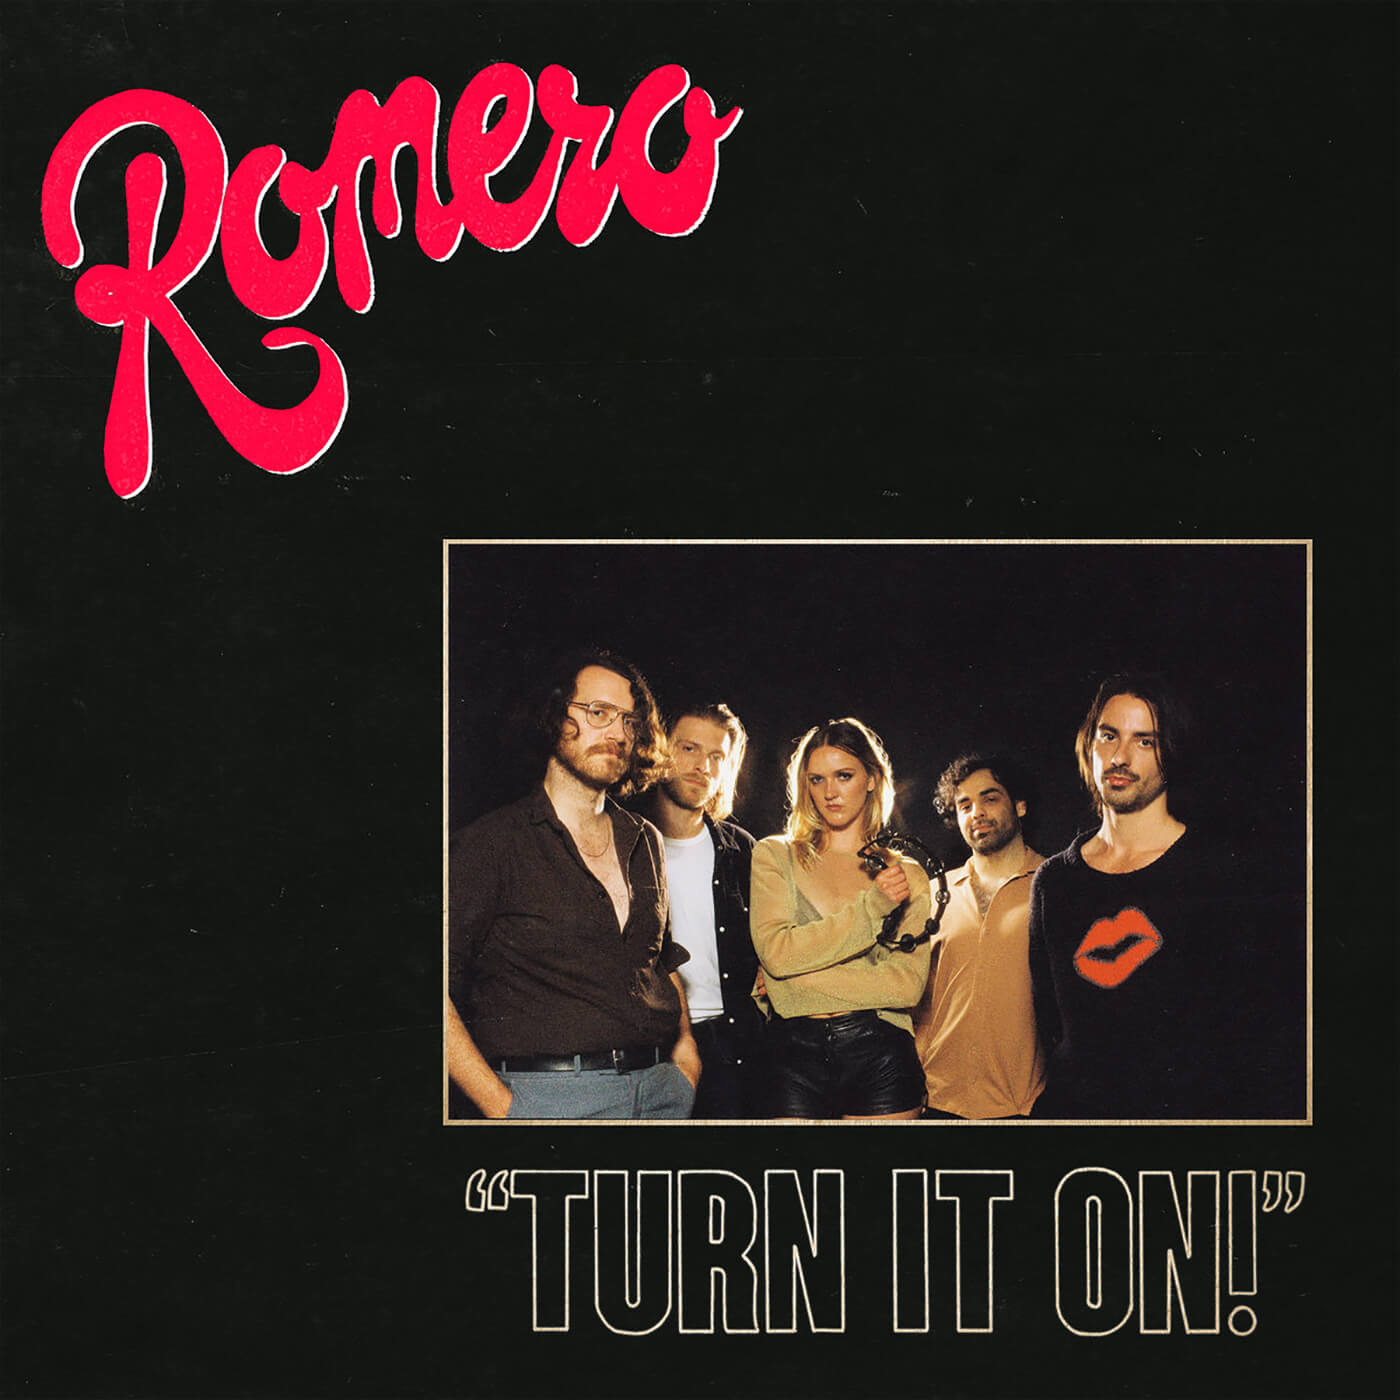 Romero - Turn It On!